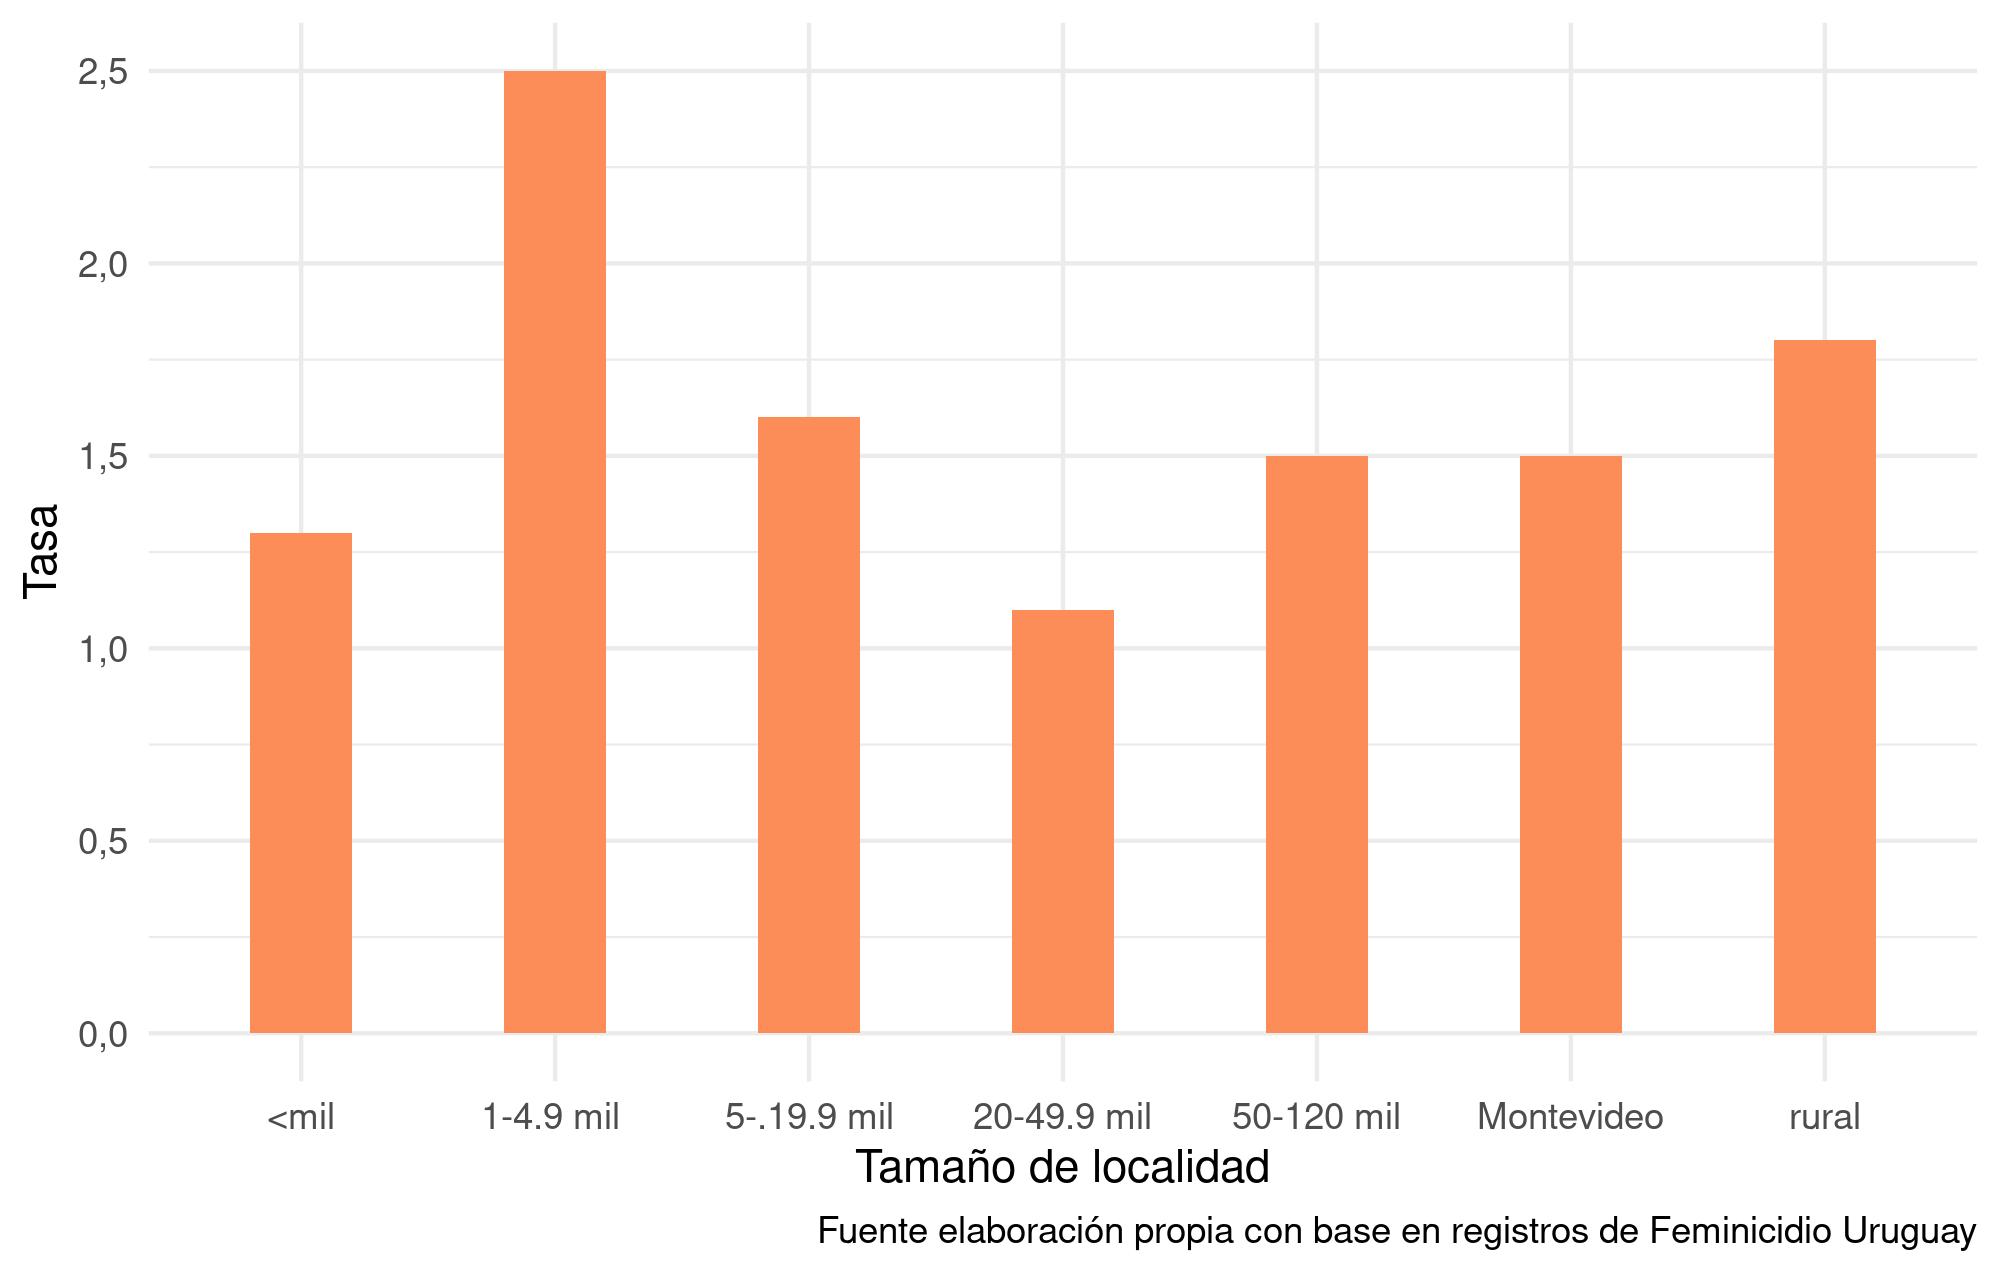 Tasa de feminicidios según tamaño de la localidad (2001-2019)